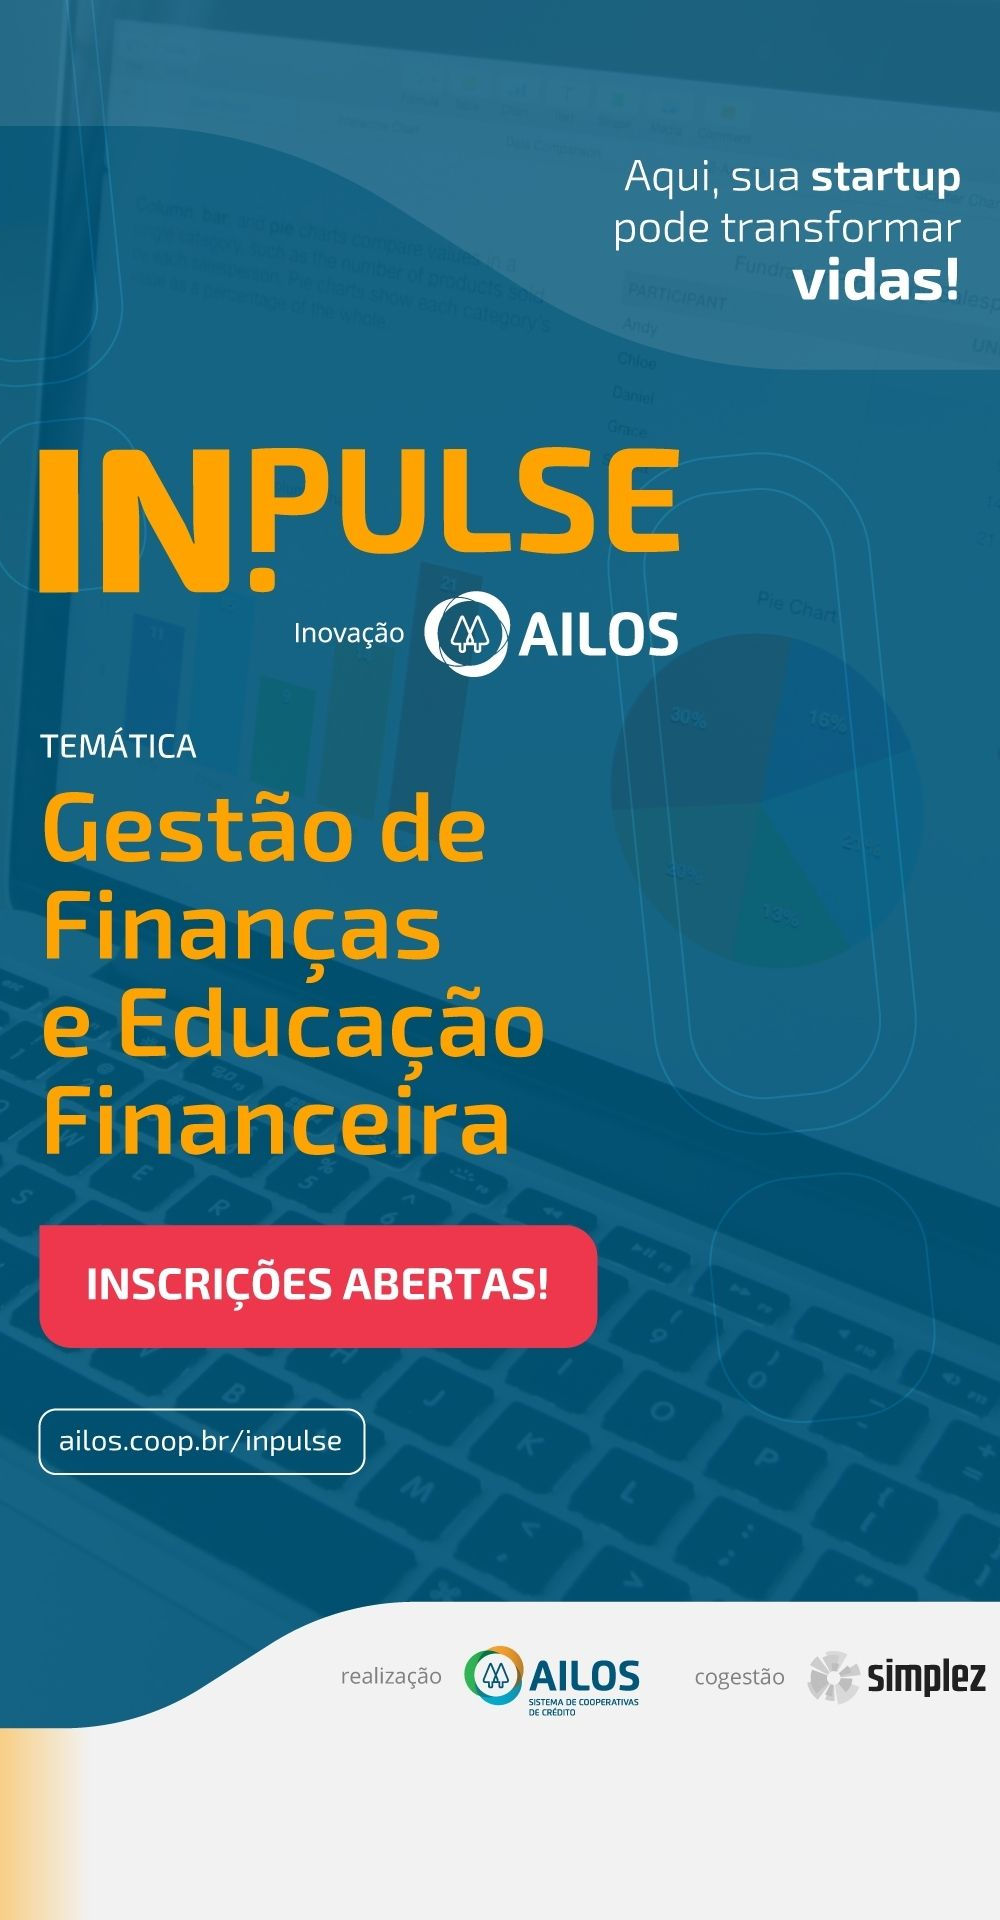 InPulse Ailos está com inscrições abertas para startups